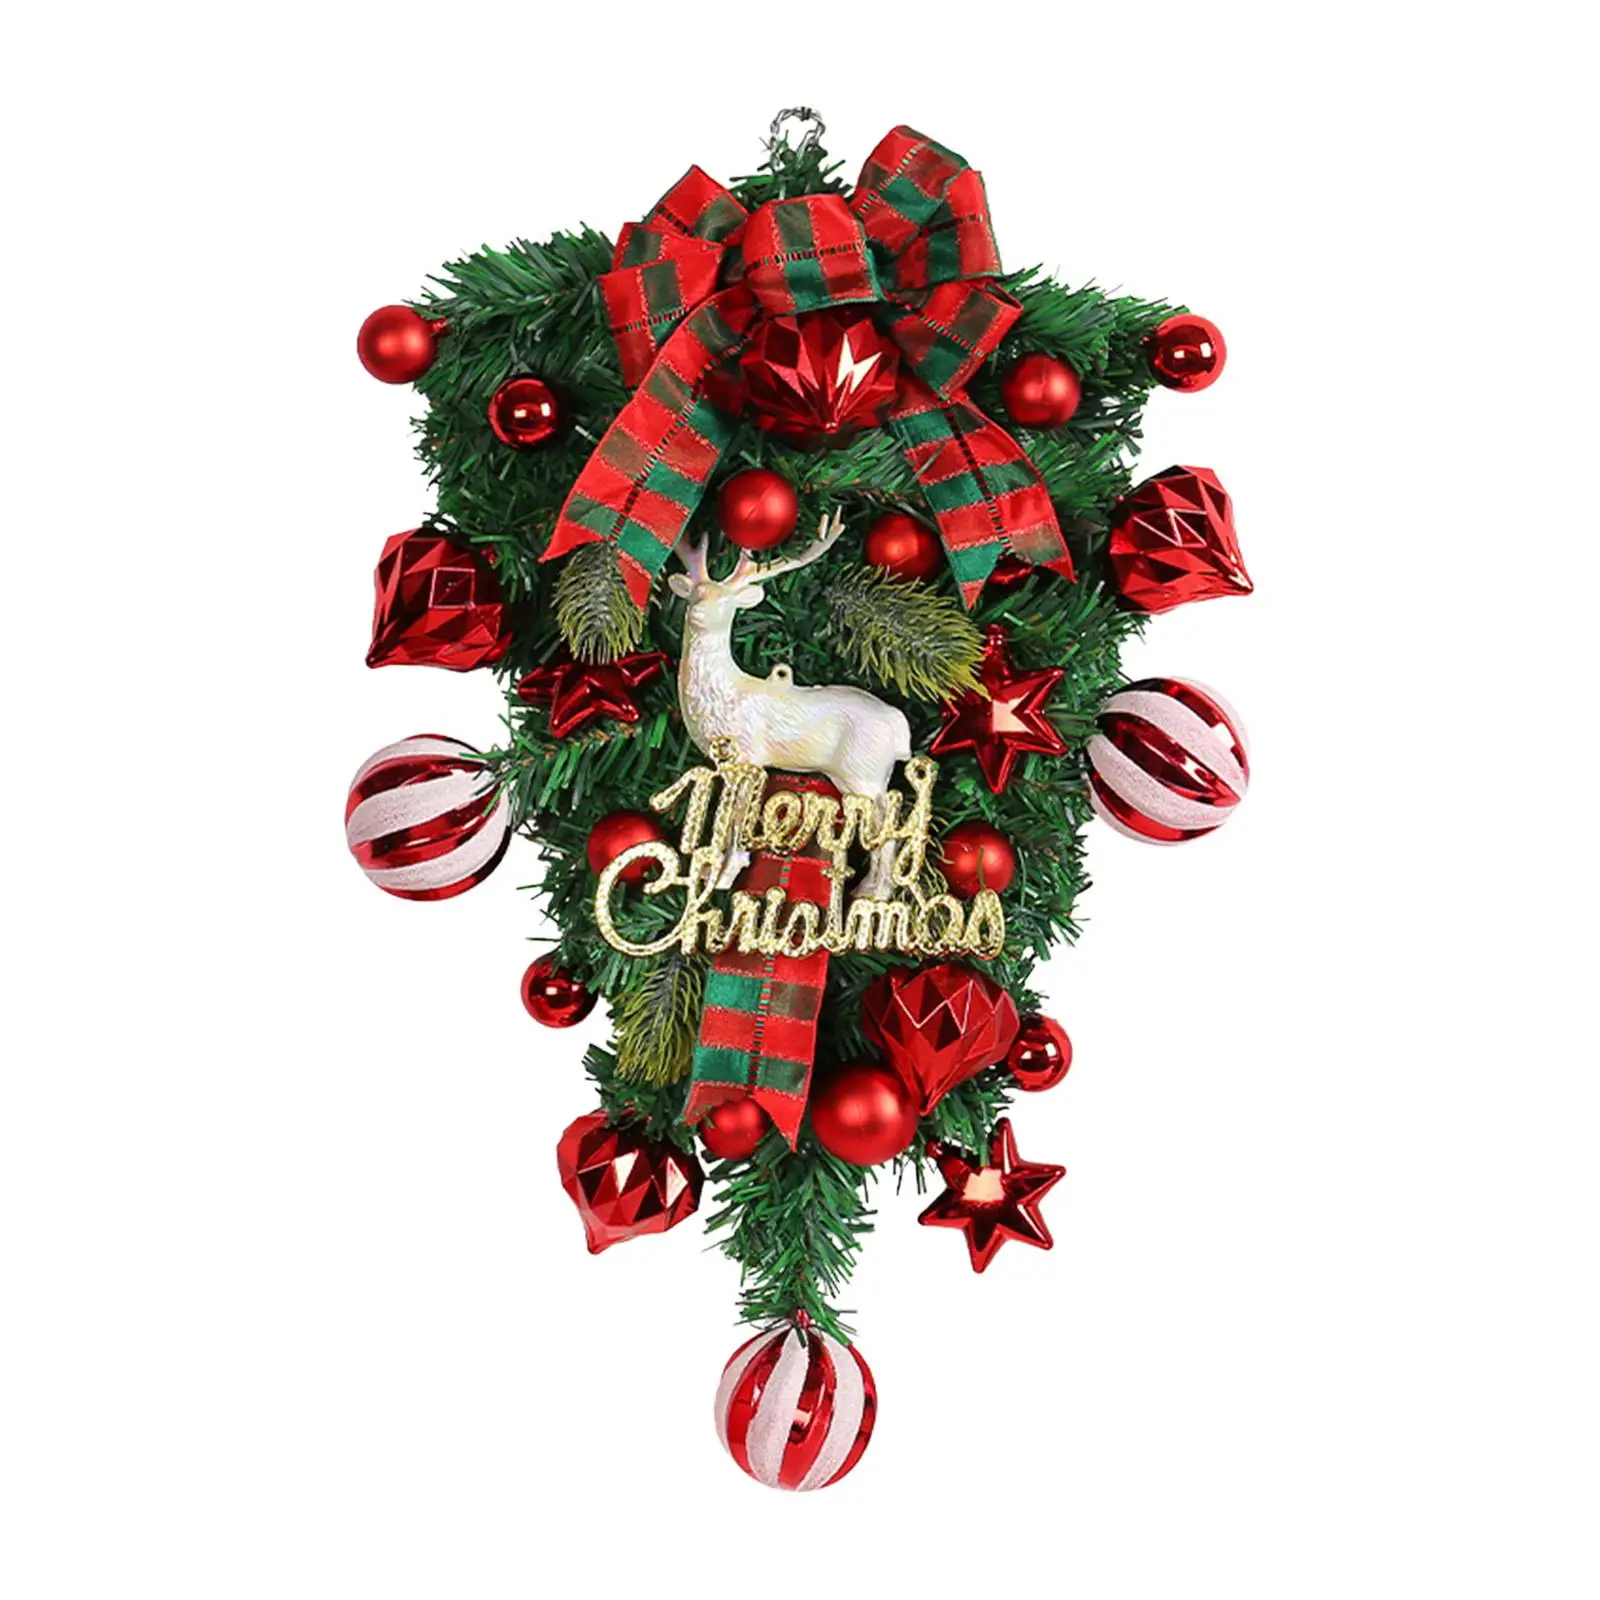 Christmas Teardrop Swags Artificial Wreath Christmas Swag Hanging Ornament Christmas Wreath for Holiday Home Garden